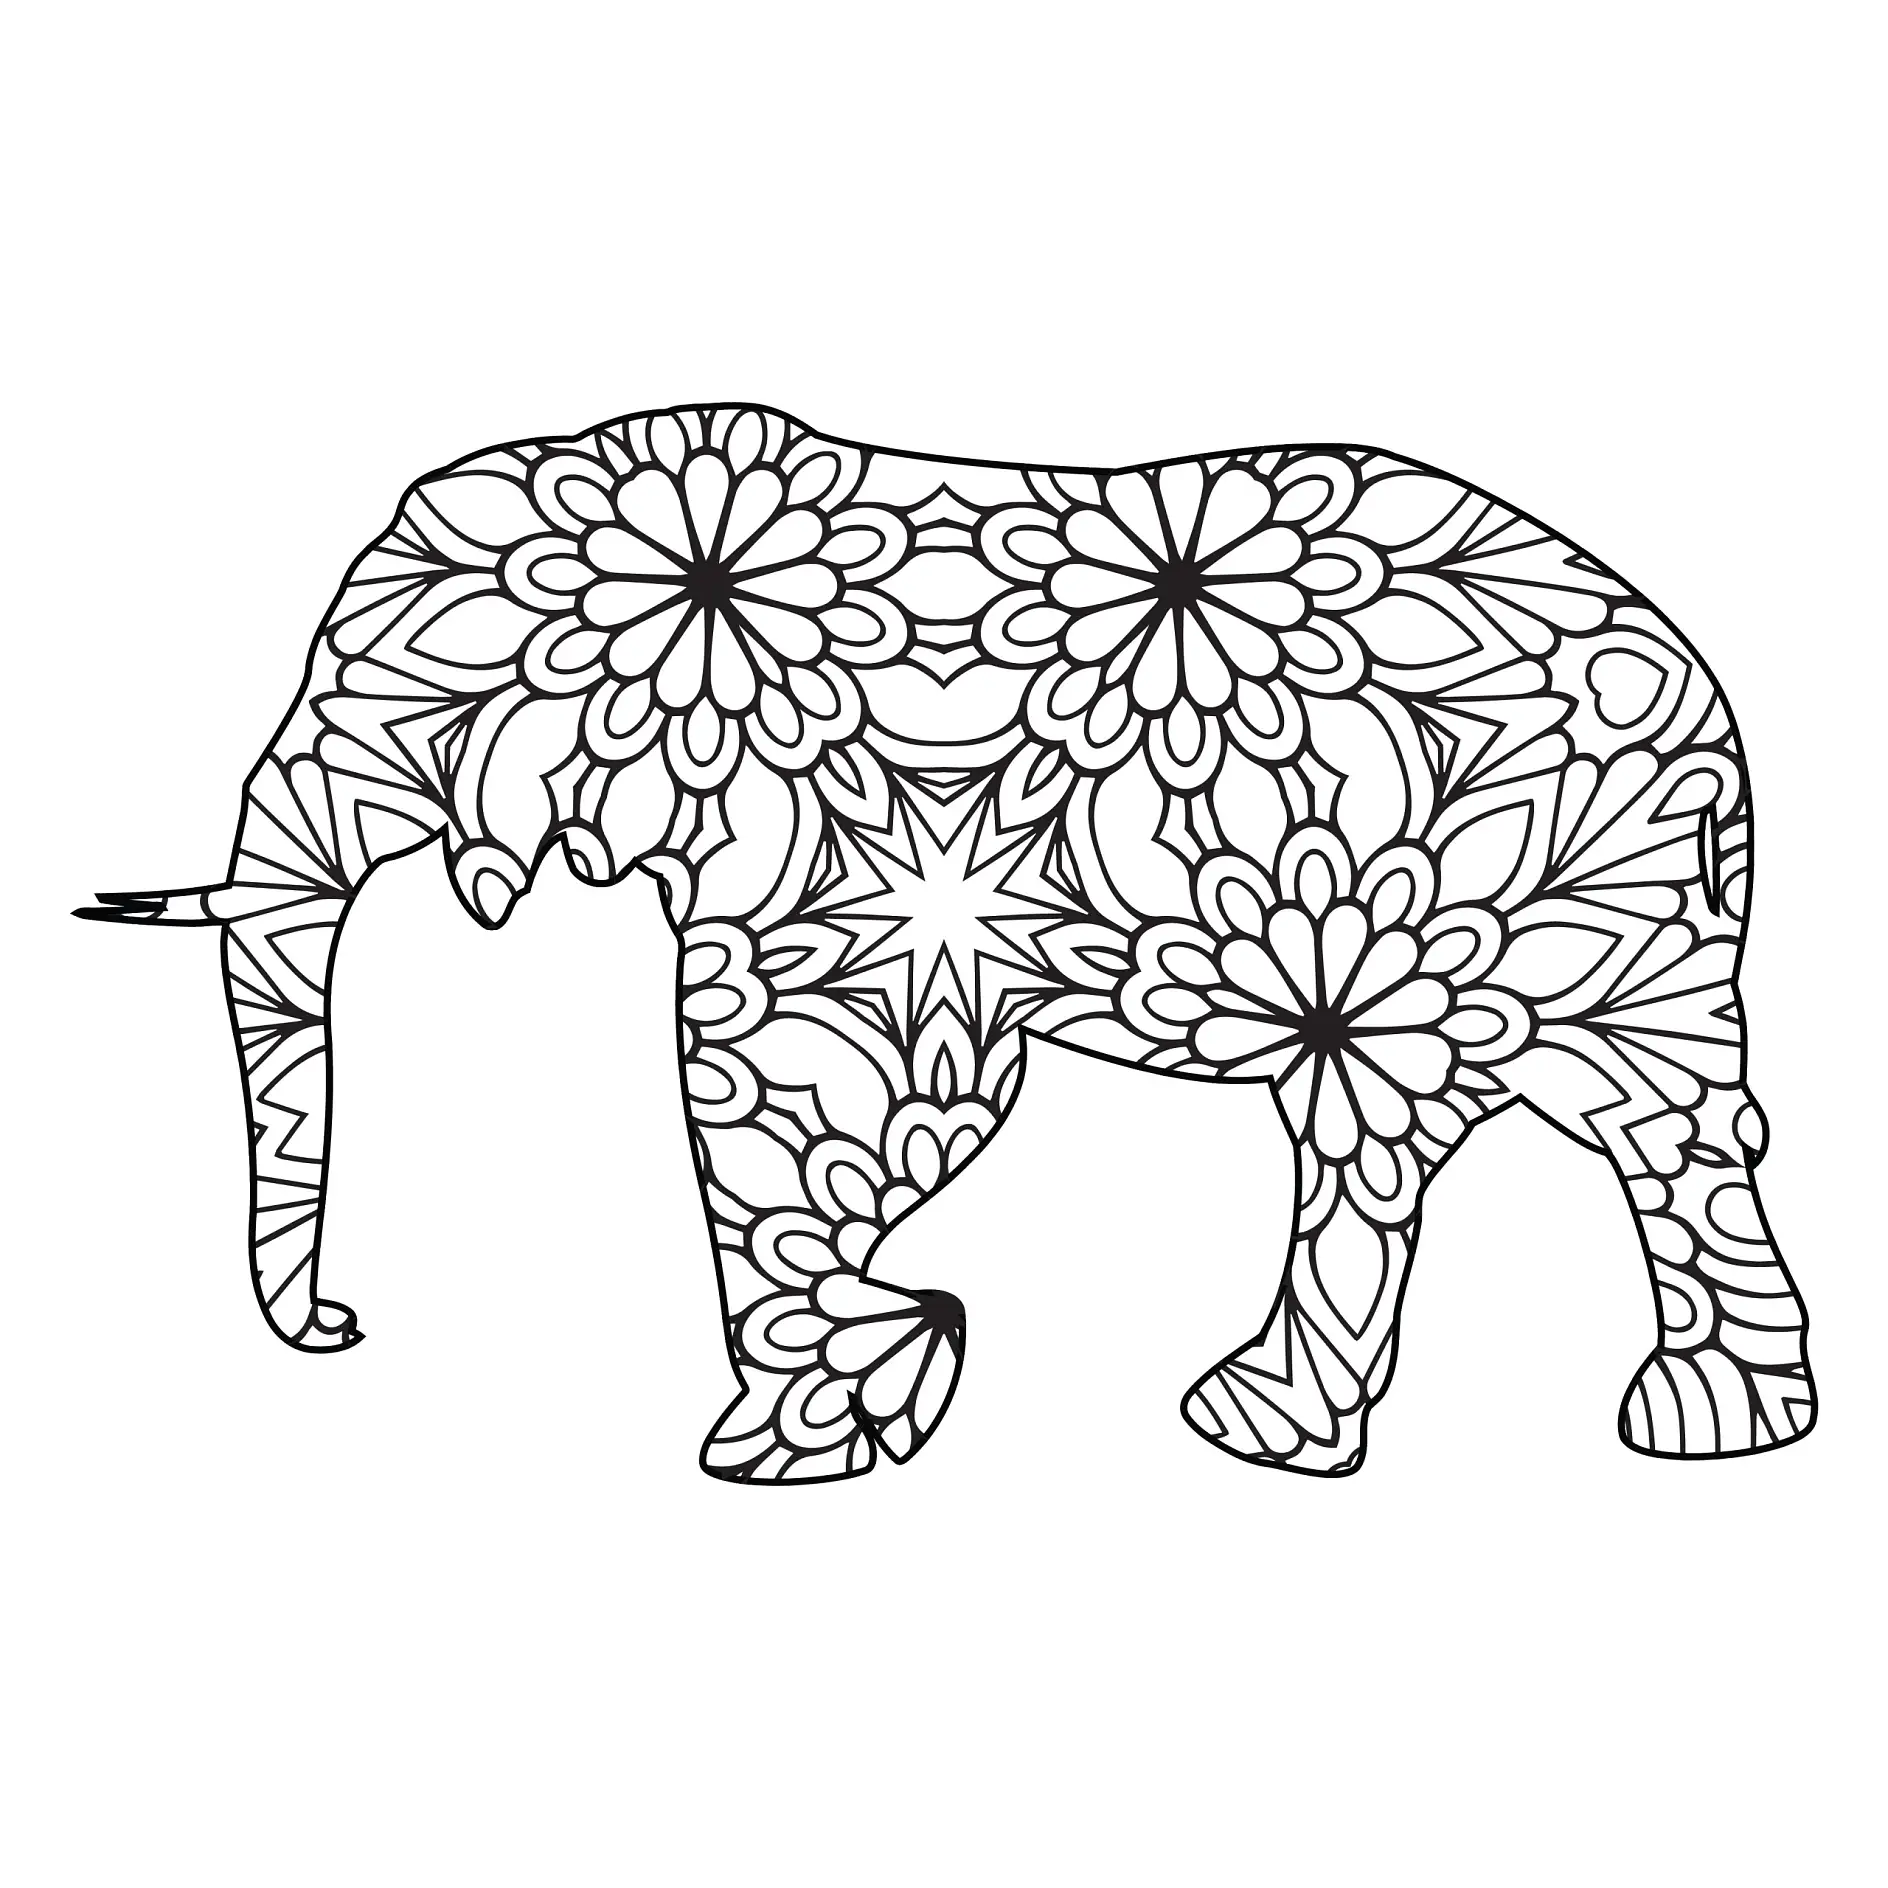 Ausmalbild Mandala Elefant mit symmetrischen Blumenmustern und klaren Linien